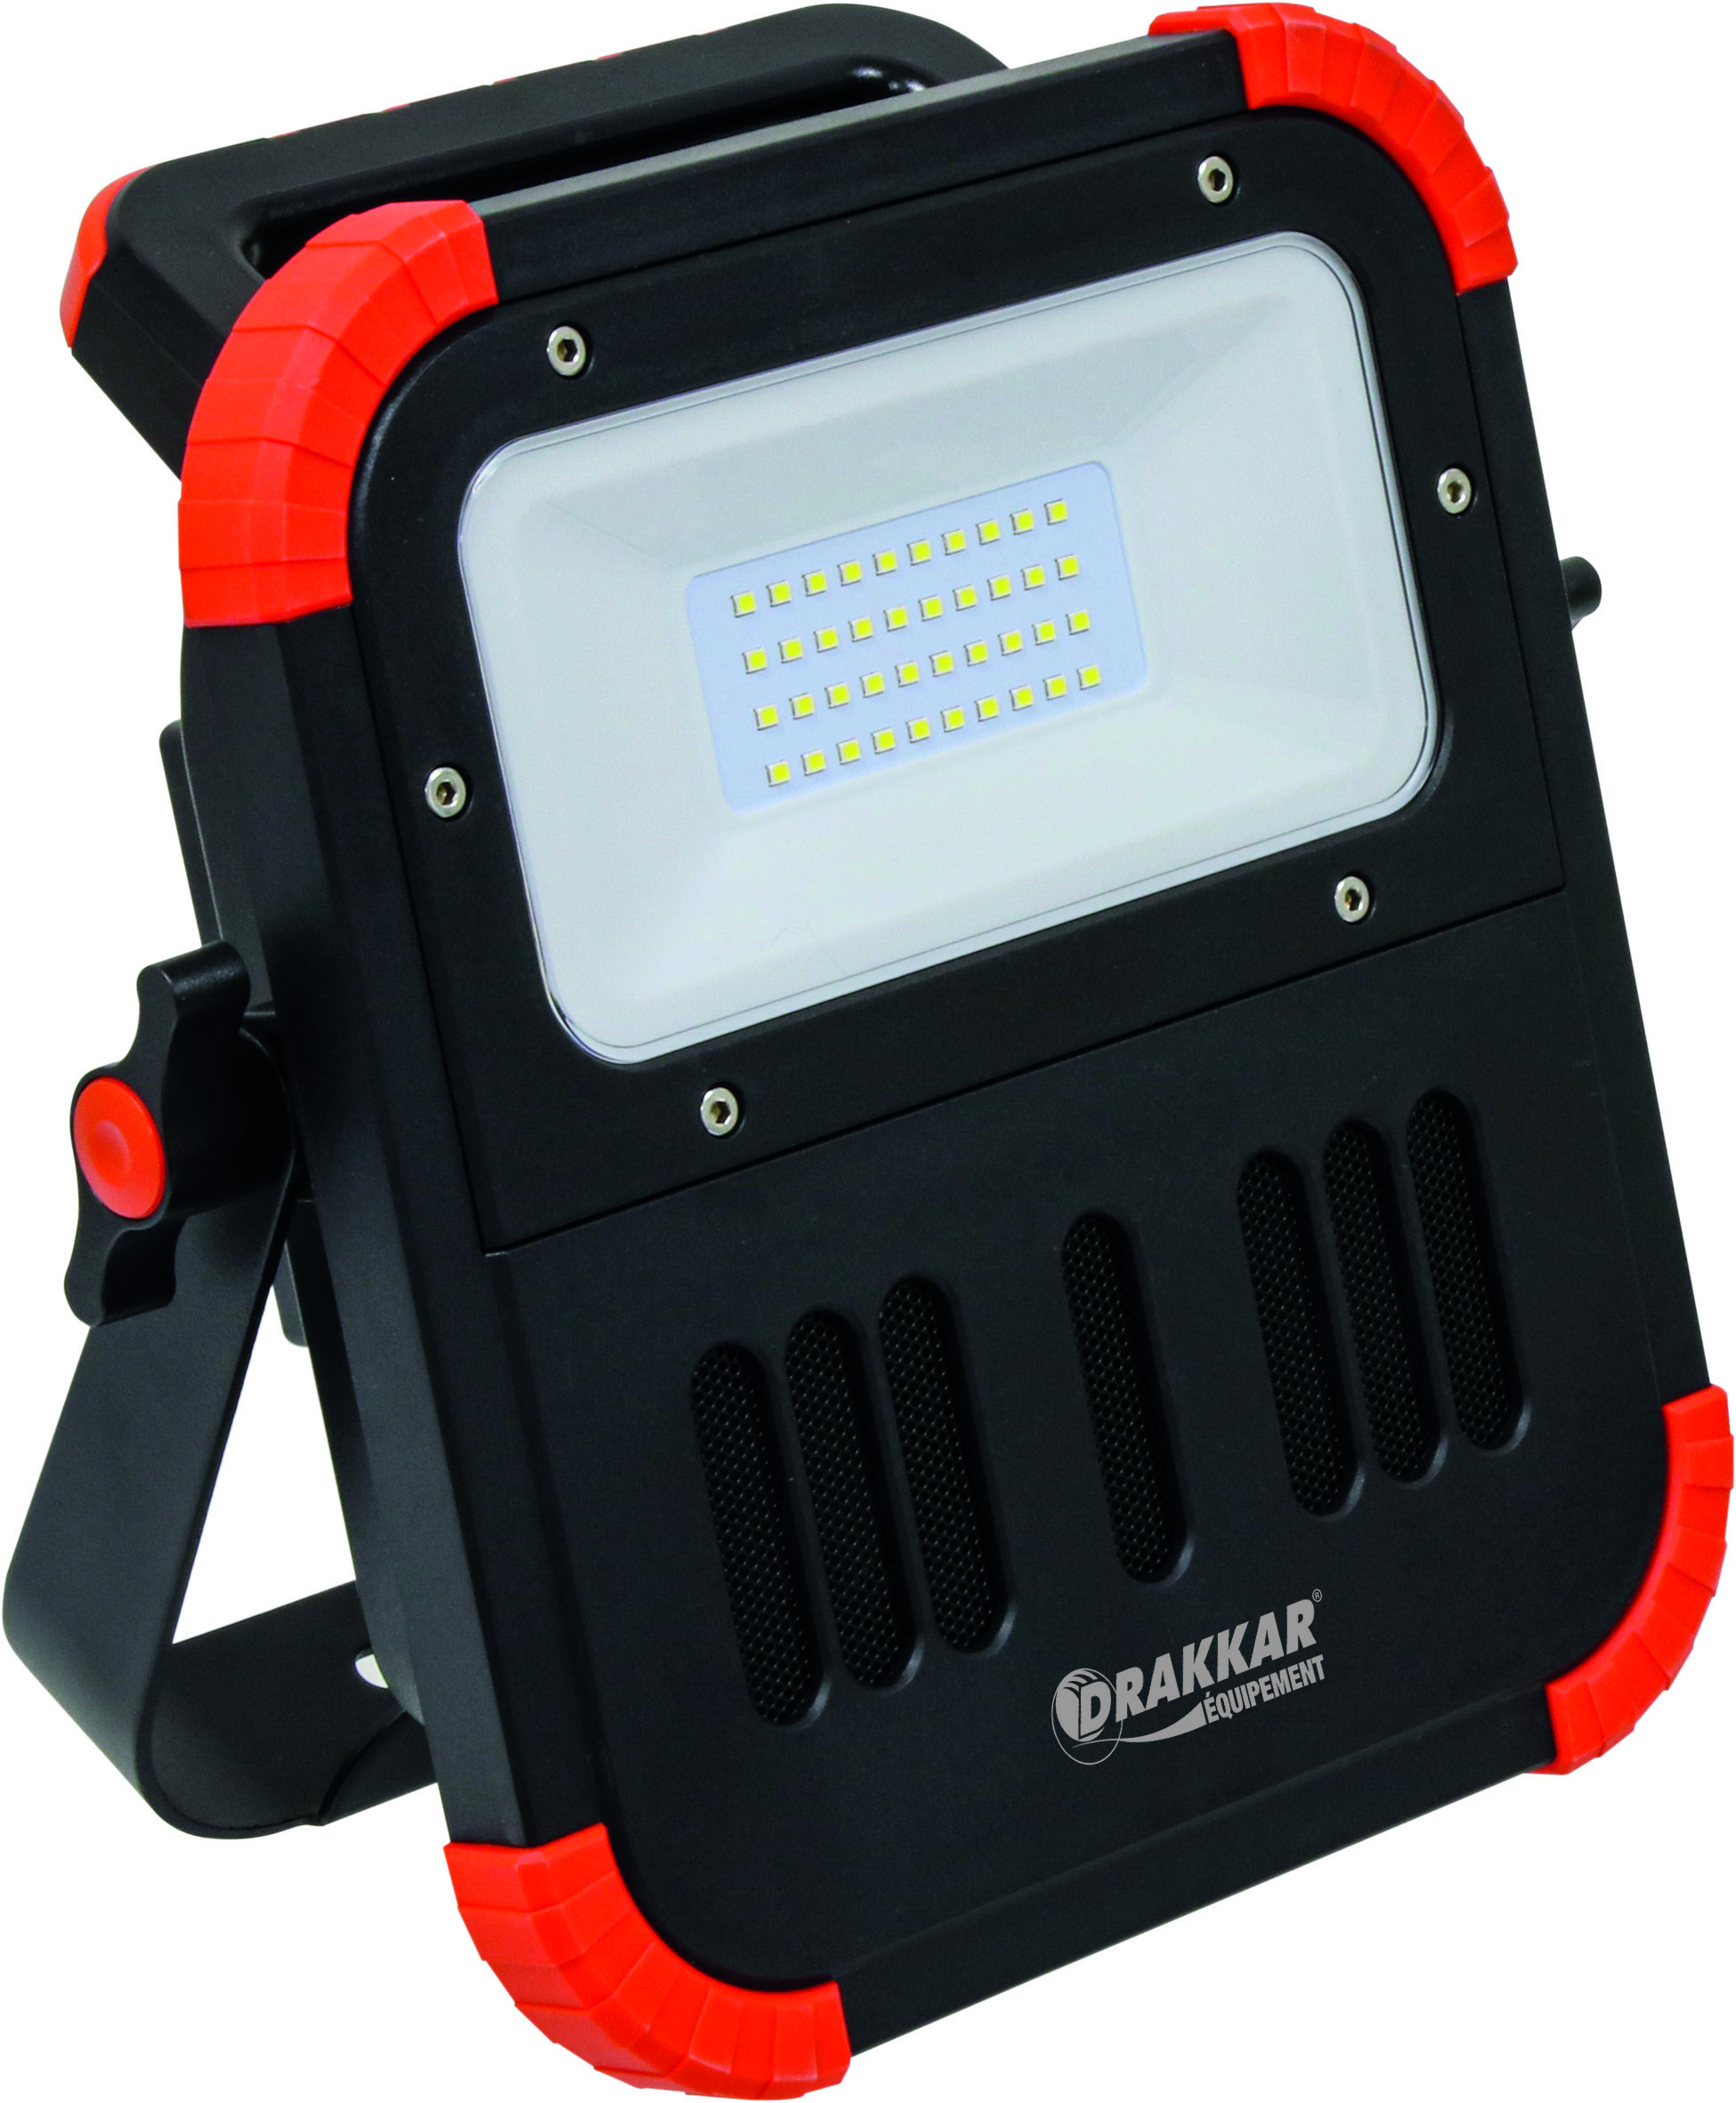 PROJECTEUR LED Rechargeable avec Enceinte bluetooth-DRAKKAR  EQUIPEMENT-S02155 - MATOUTILS